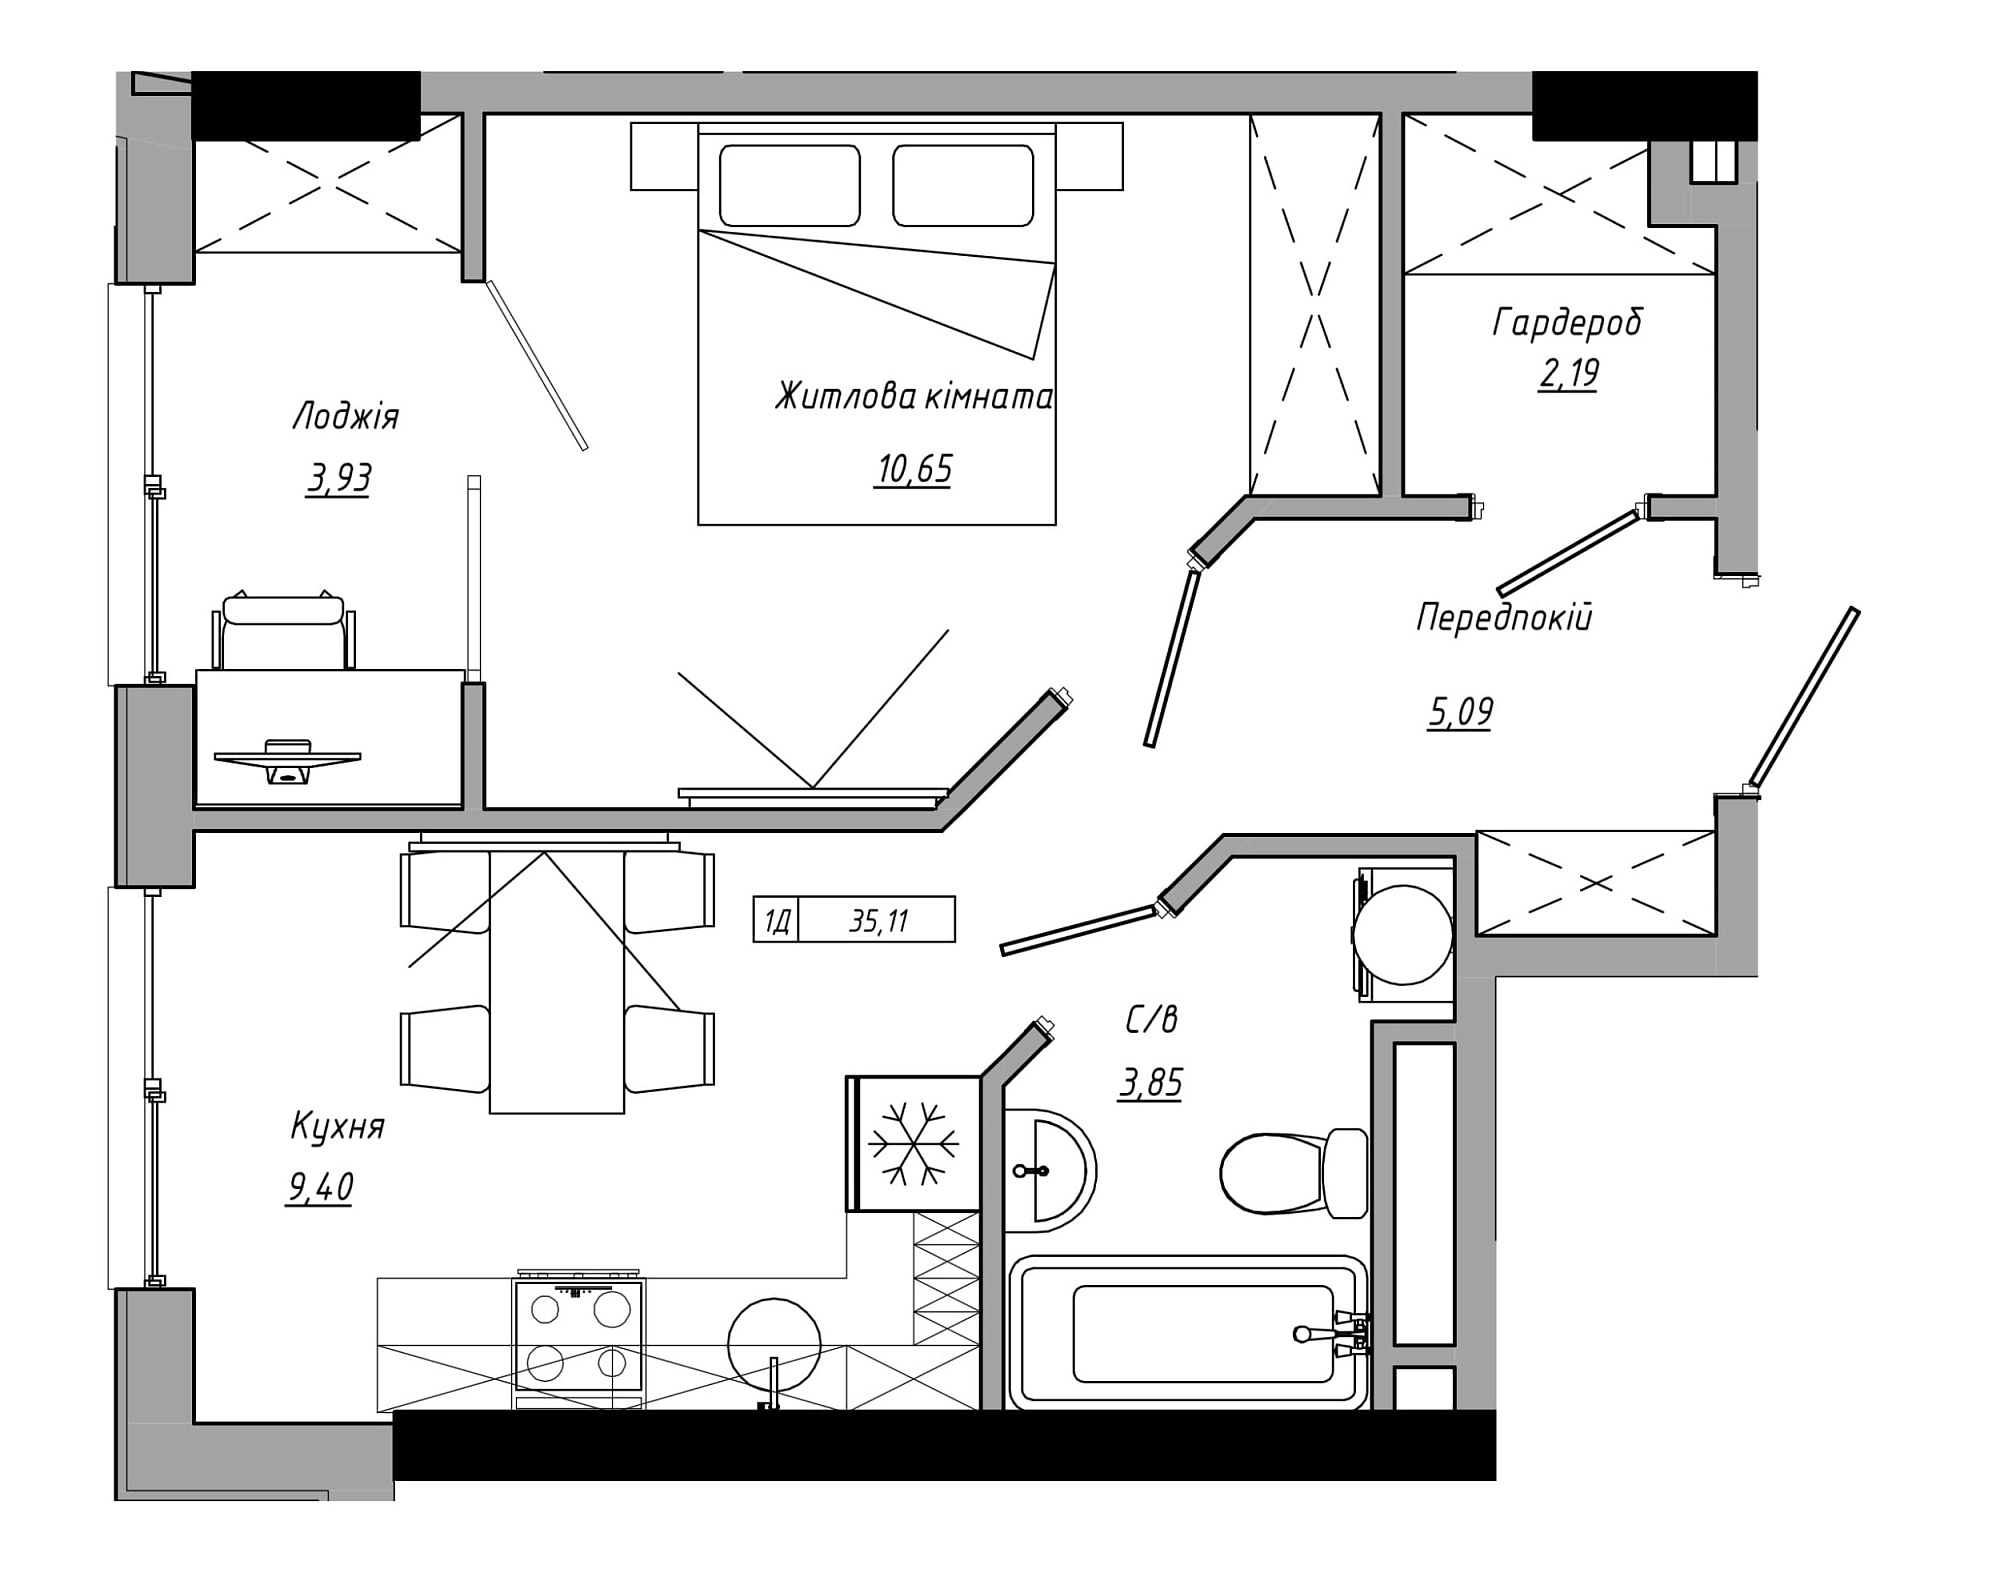 Планування 1-к квартира площею 35.11м2, AB-21-08/00006.